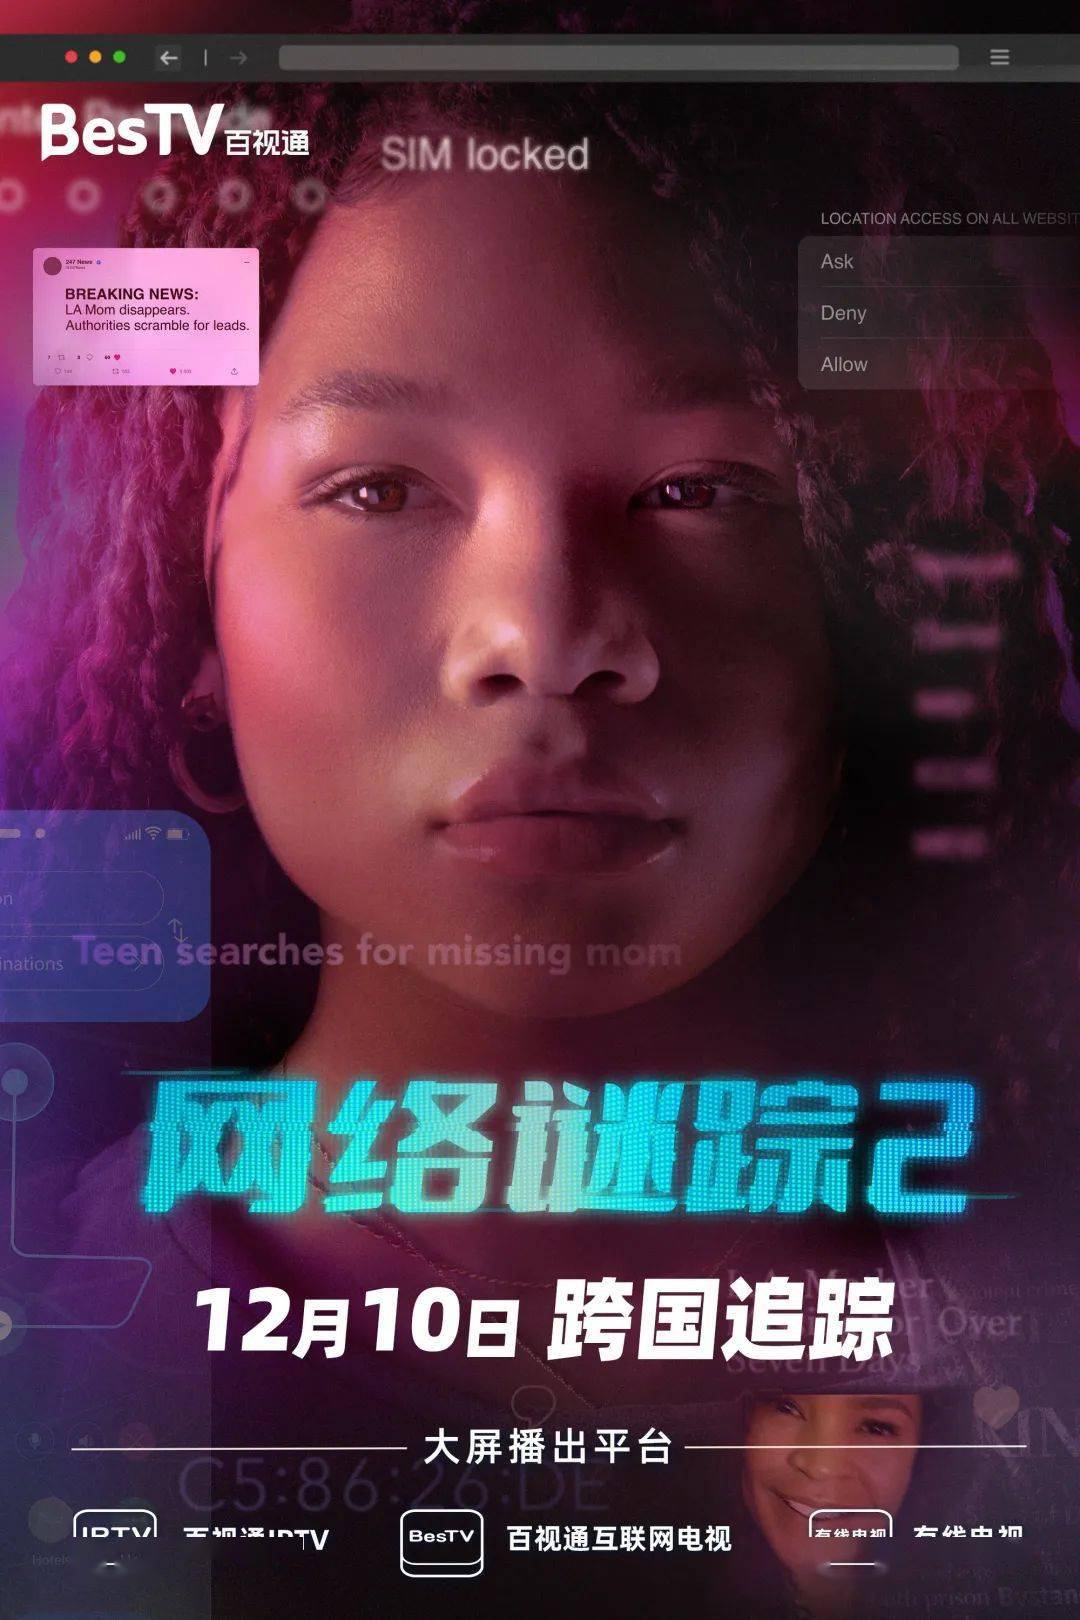 【电影】新片《网络谜踪2》:x世代少女巧用互联网,跨国追寻失踪母亲